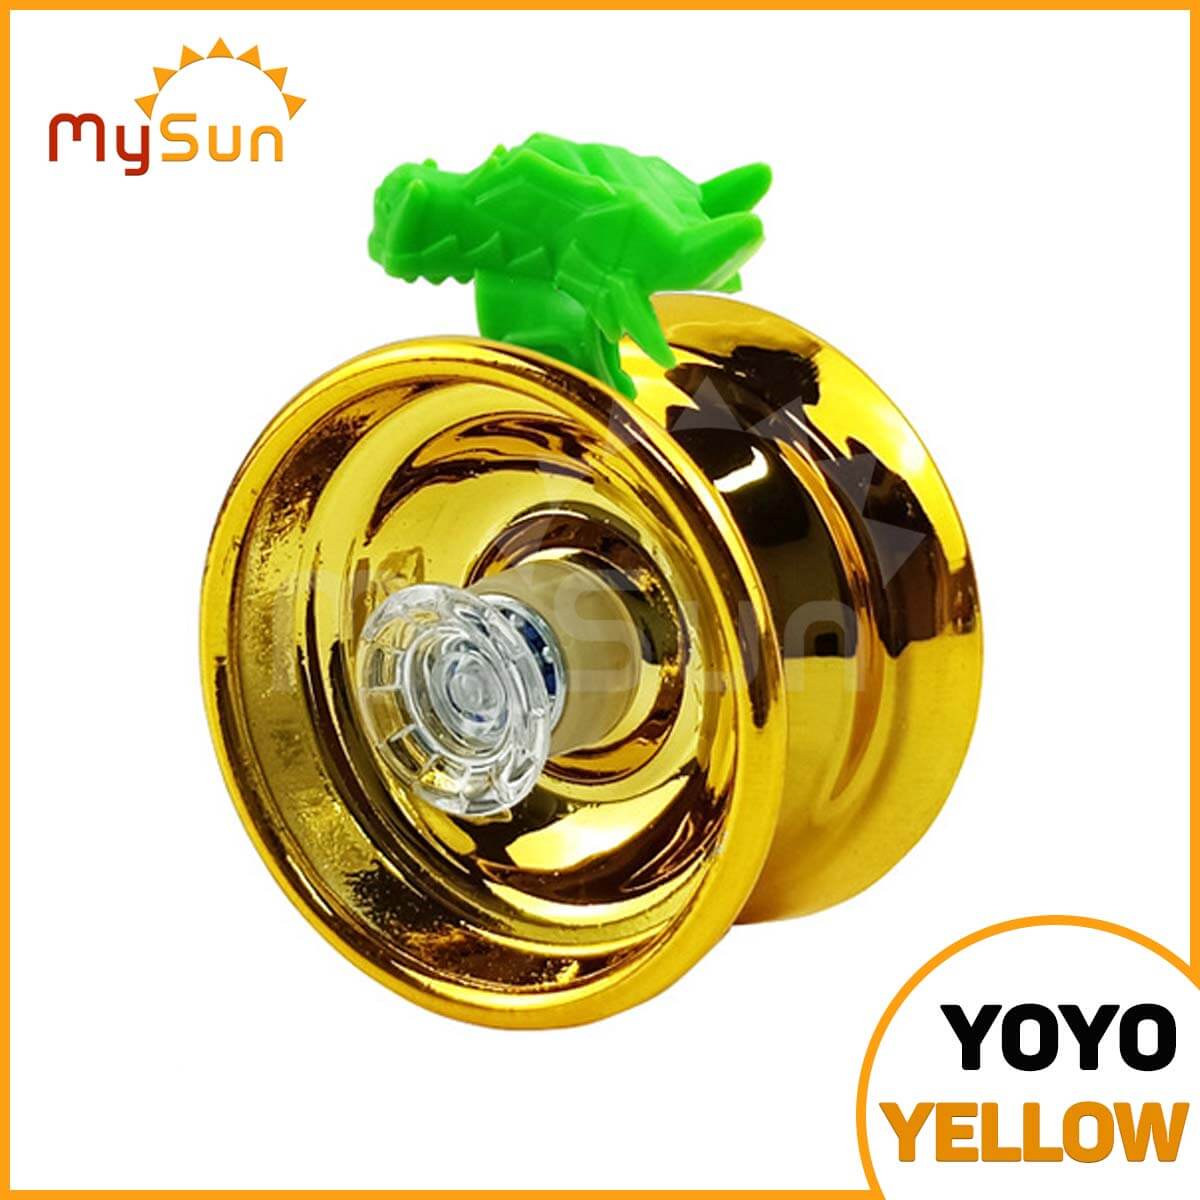 Đồ chơi YoYo ZoZo nhạy chuyên nghiệp linh thú thần rồng hổ tuyệt đỉnh con quay vô cực giá rẻ cho bé MySun